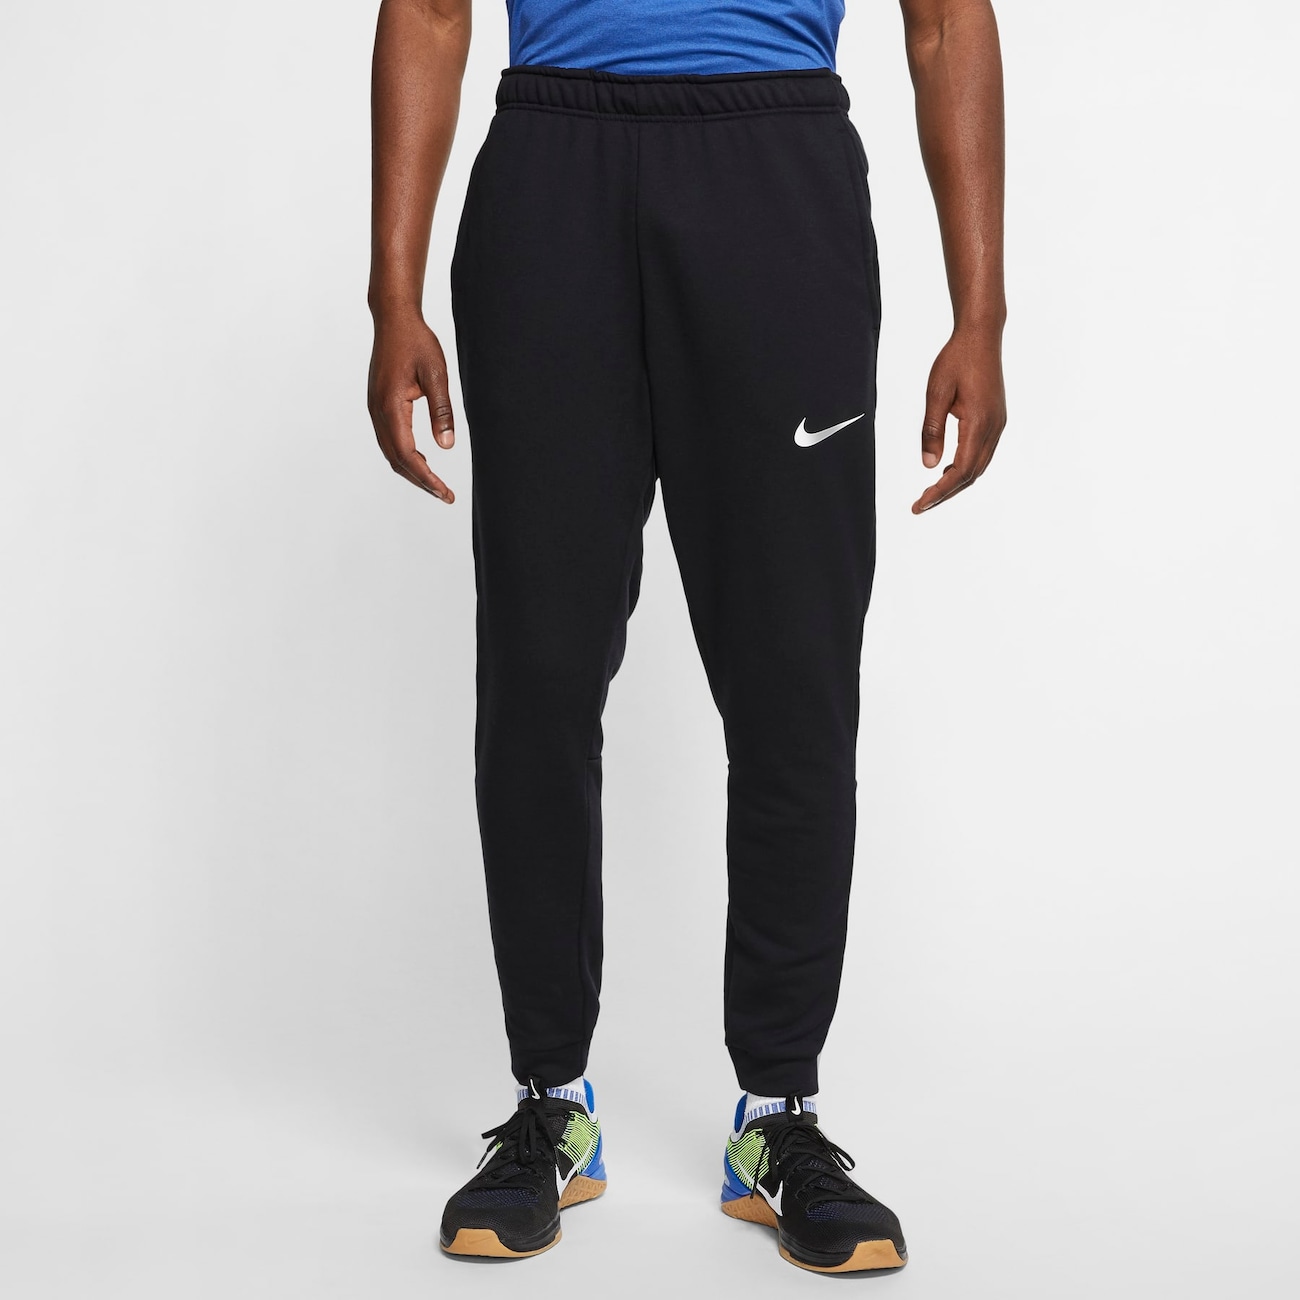 Calça Nike Dri-FIT Fleece Masculina